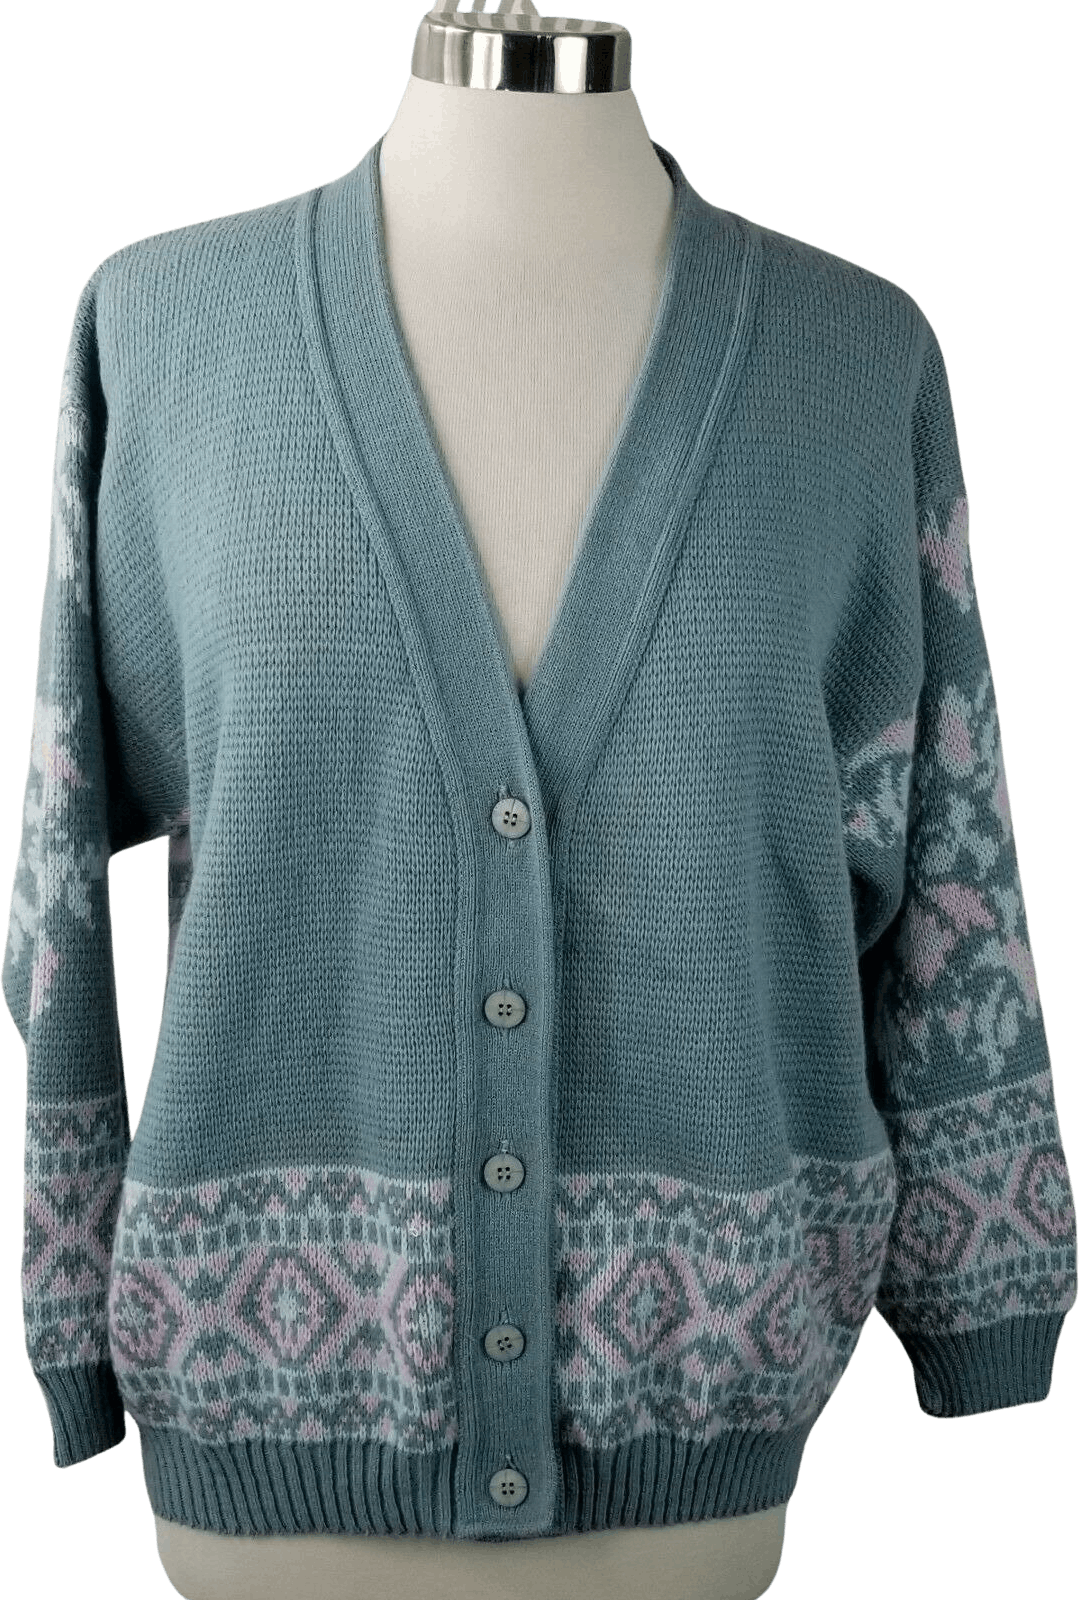 Vintage 90’s Blue Floral Grunge Cardigan Sweater | Shop THRILLING